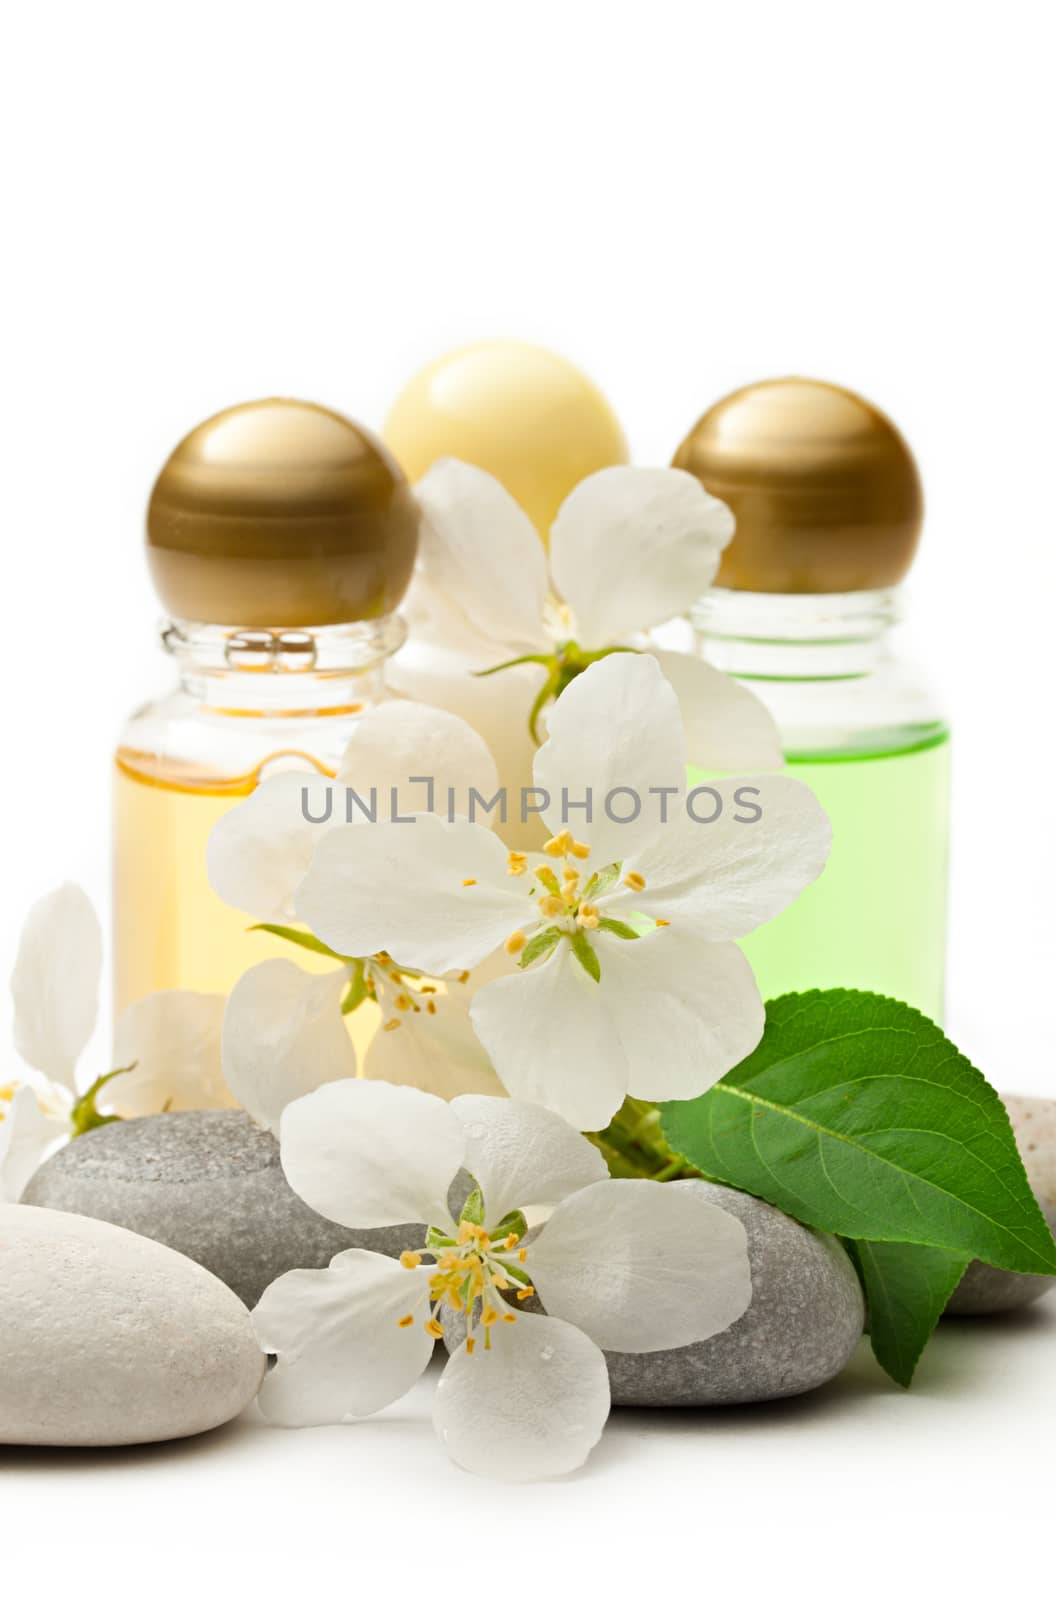 Apple tree flowers, stones and shampoo